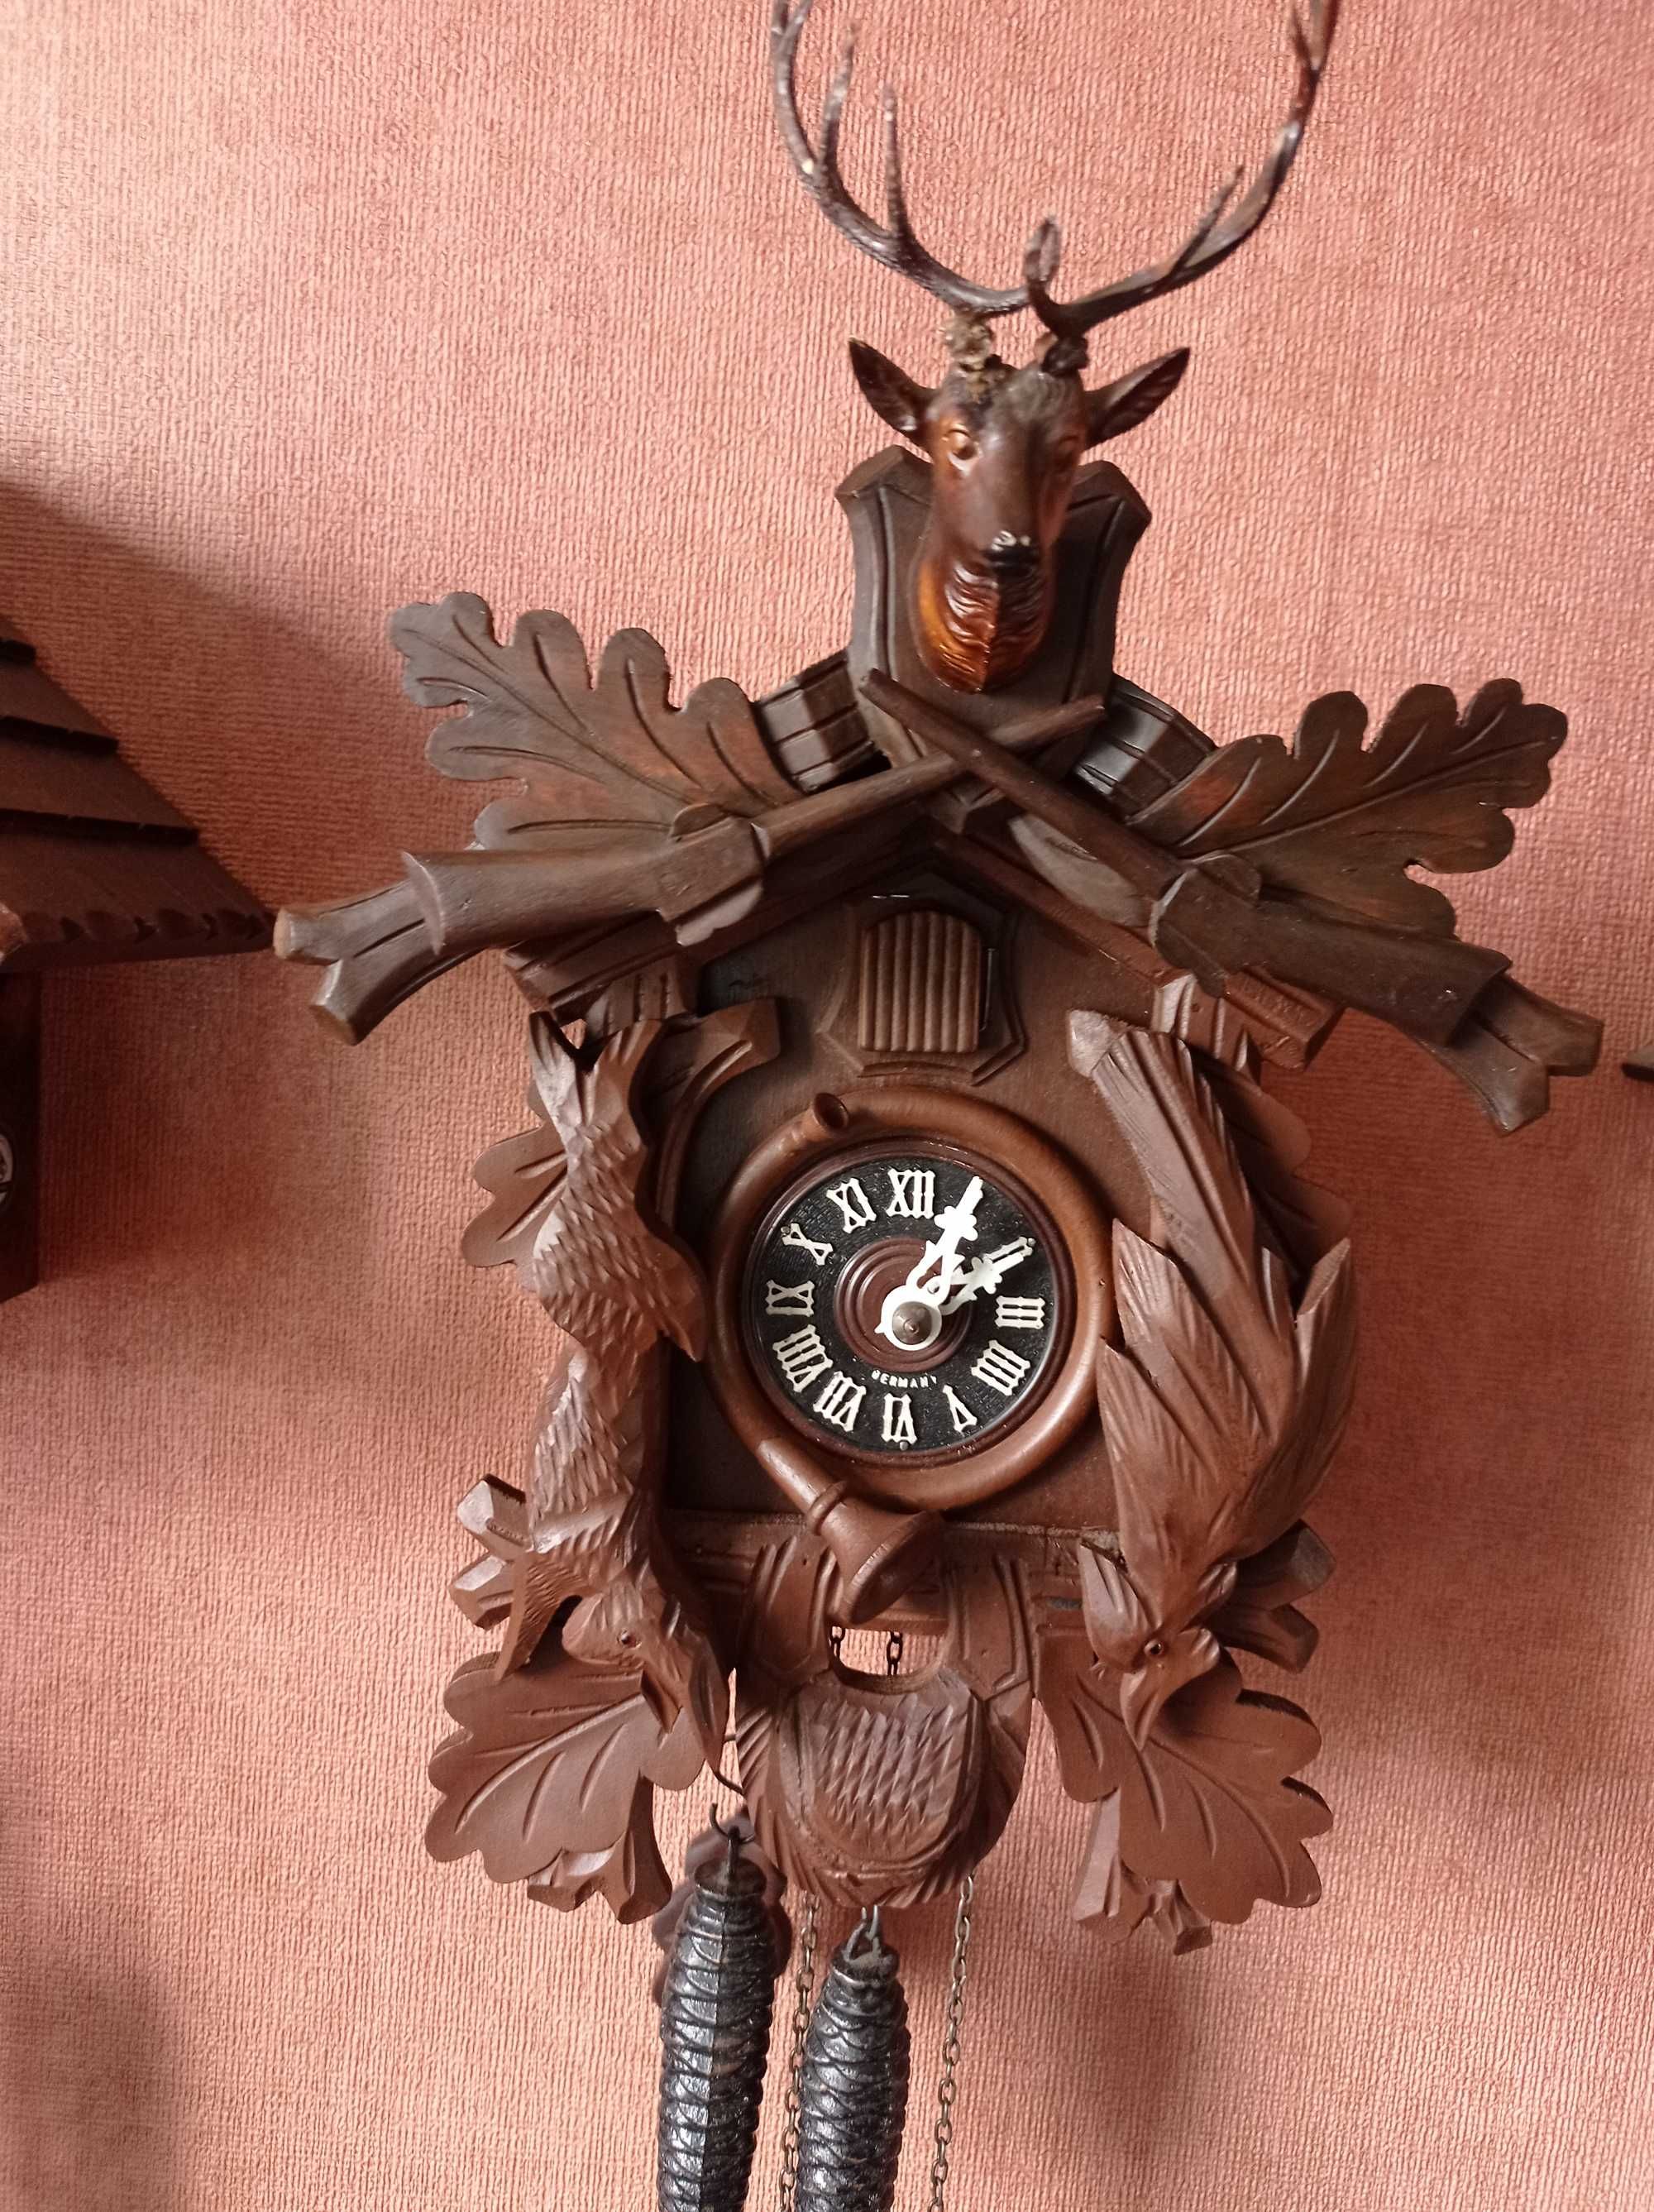 Ładny zegar z kukułką-motywy myśliwskie: jeleń,zając,ptak.